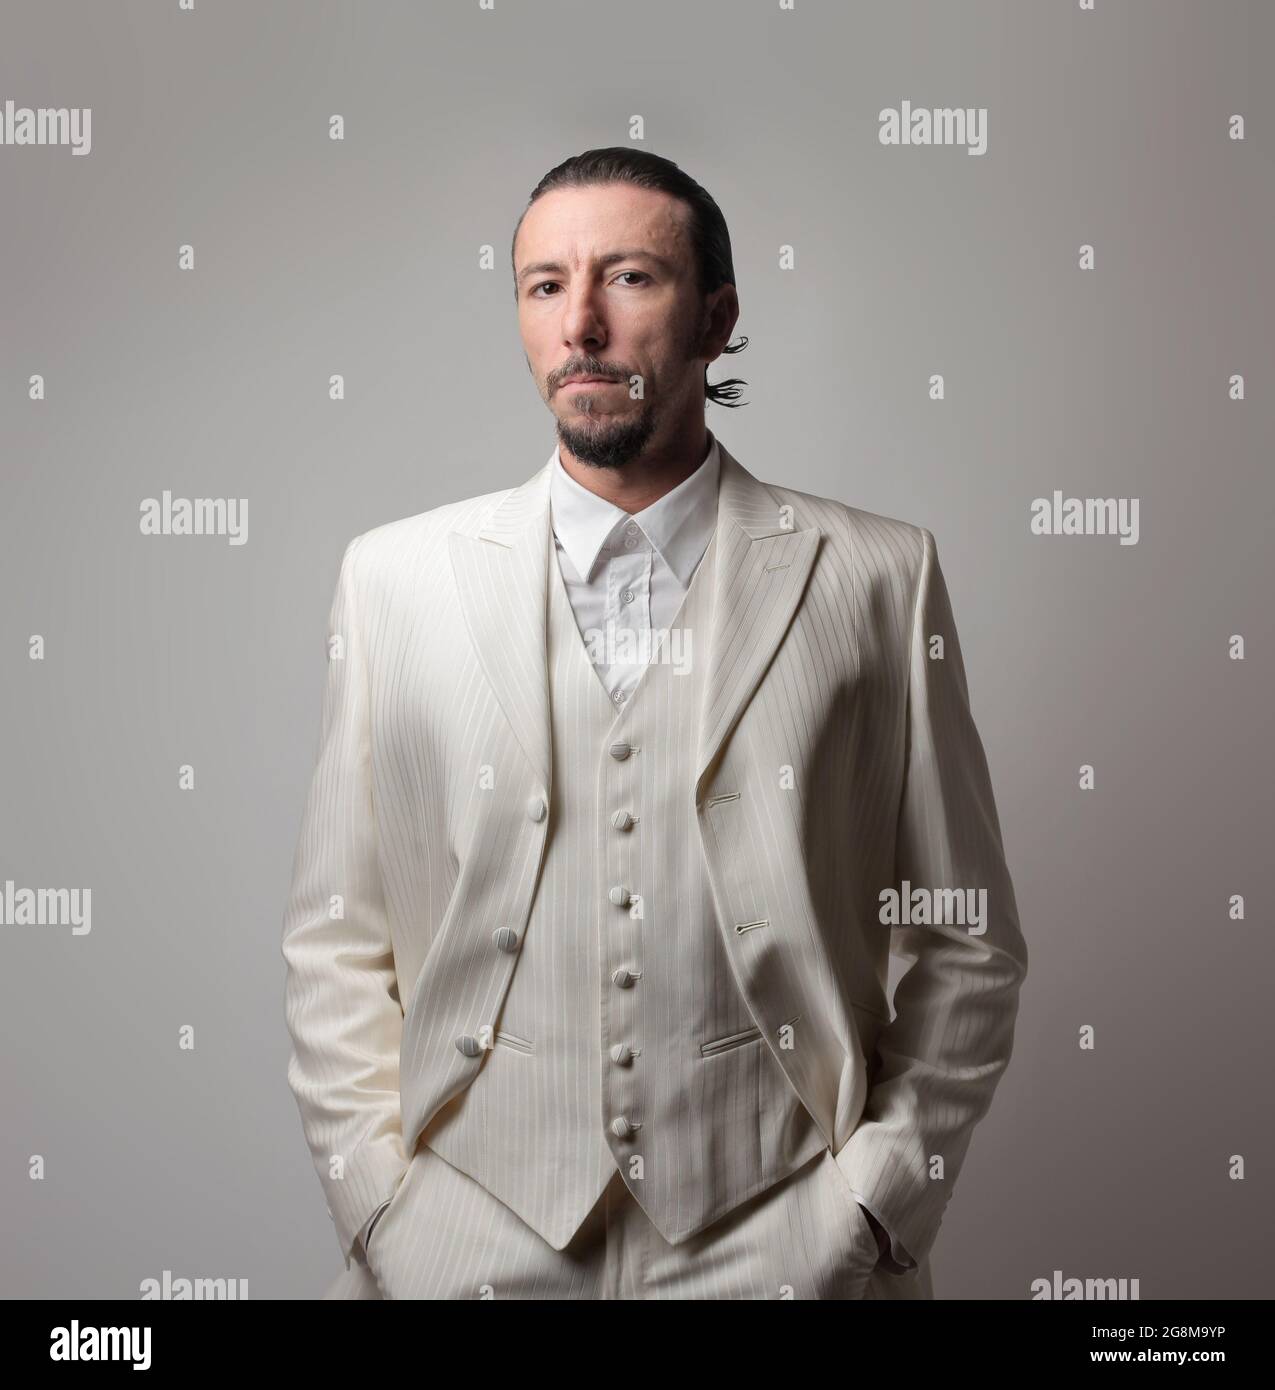 Porträt eines erwachsenen italienischen Mafia-Chefs in einem weißen Anzug  vor grauem Hintergrund Stockfotografie - Alamy